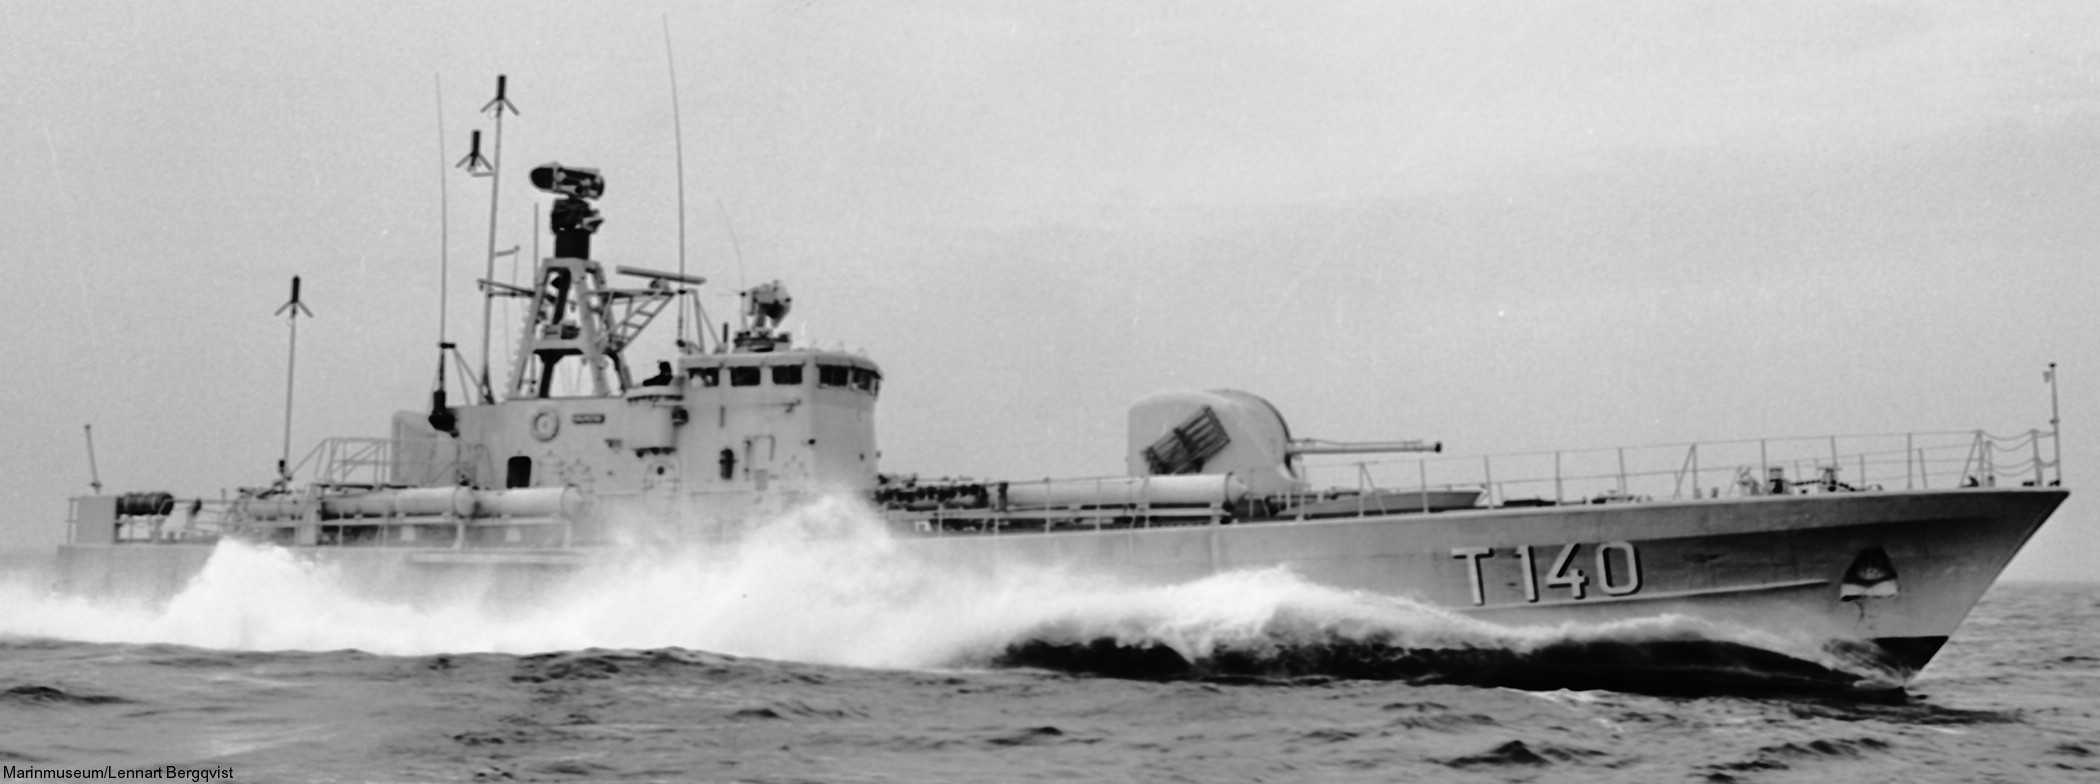 t140 halmstad hswms hms norrköping class fast attack craft torpedo missile patrol boat swedish navy svenska marinen 03